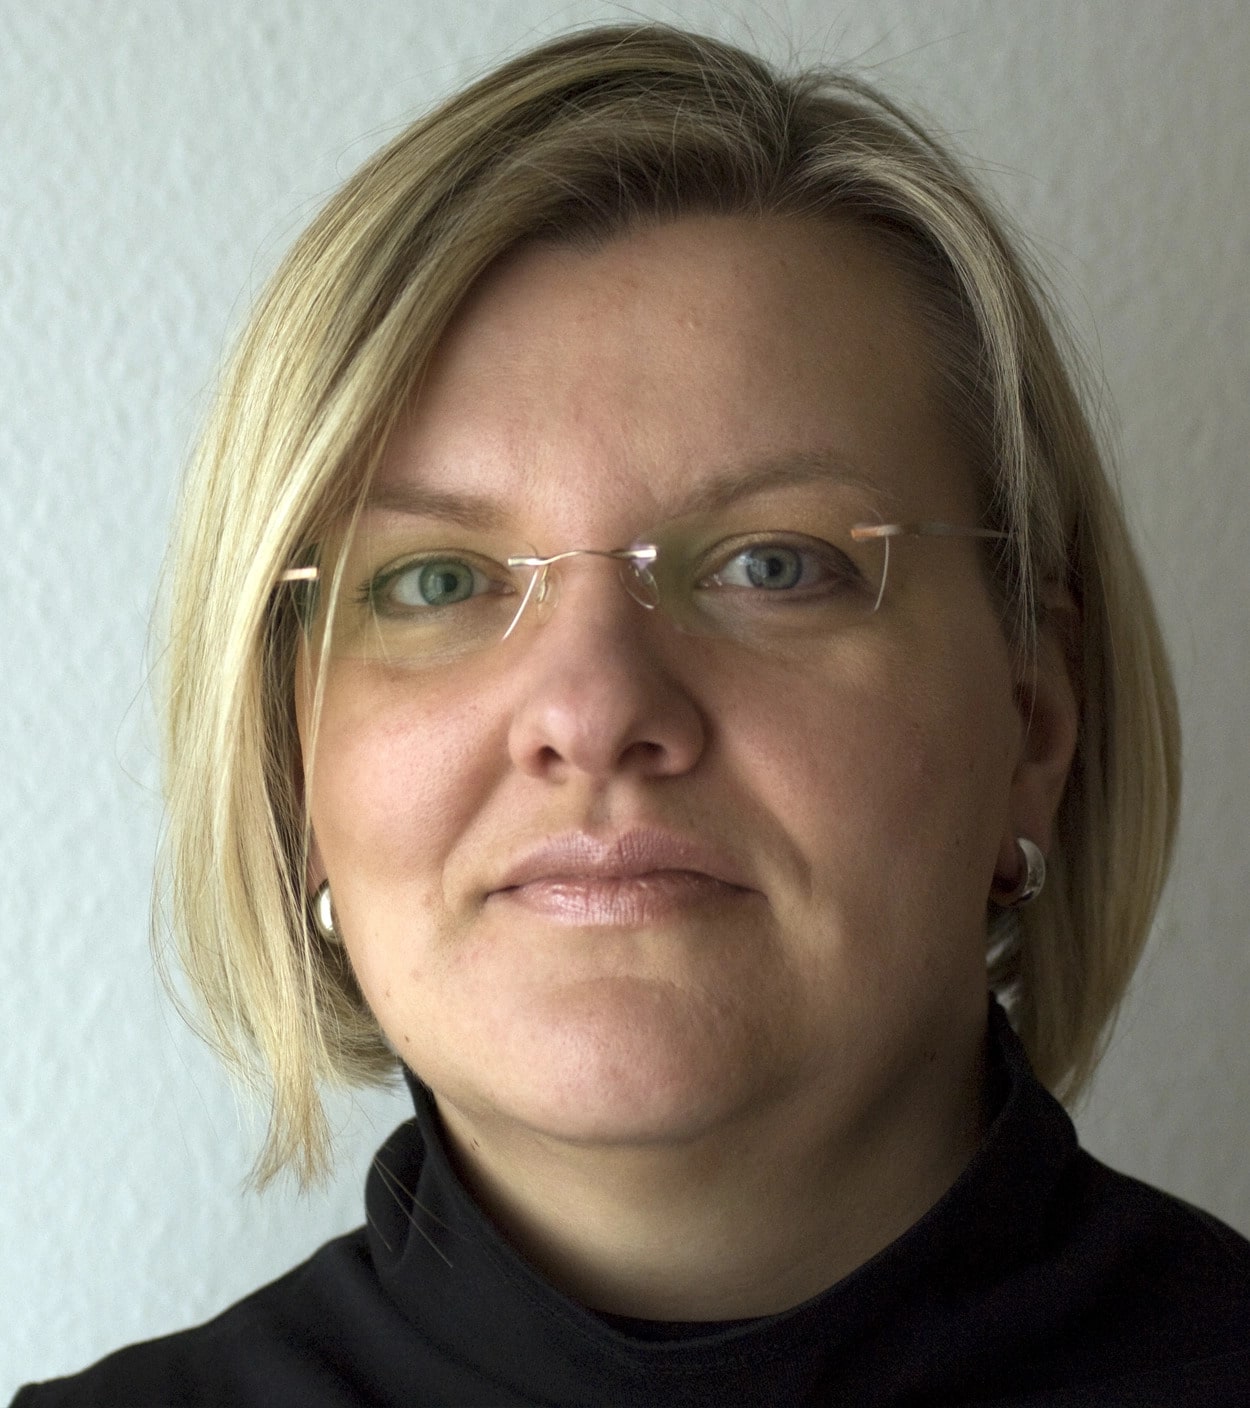 Porträt einer Frau (Frau Krämer-Marloh) mit blonden Haaren, Brillenträgerin, vor einem hellen Hintergrund.